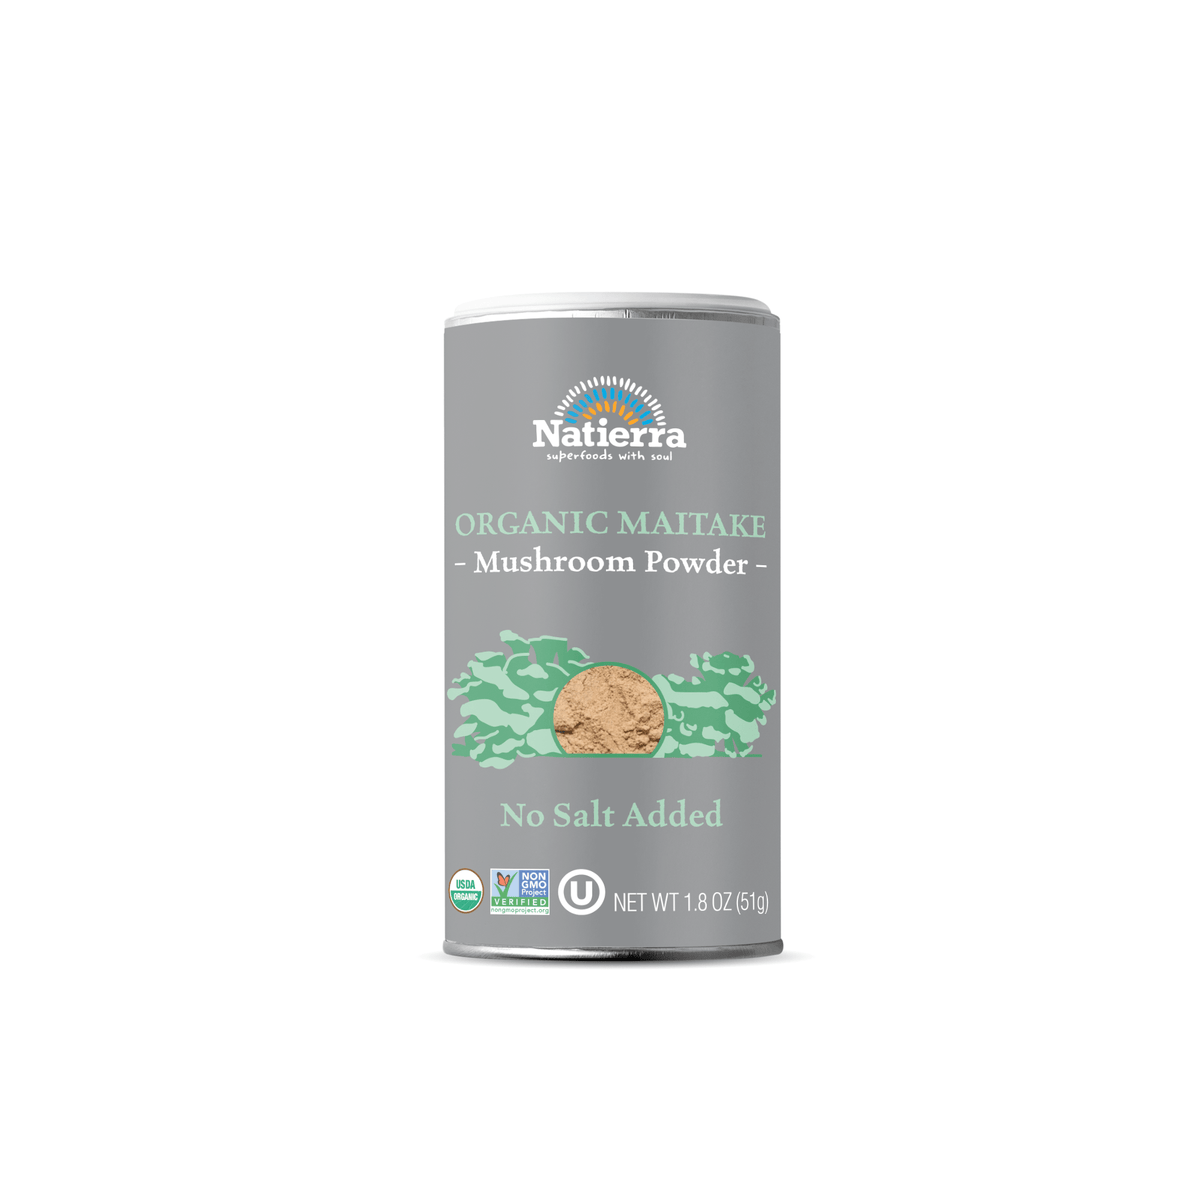 Natierra Organic Maitake Mushroom Powder 1.8 oz shaker